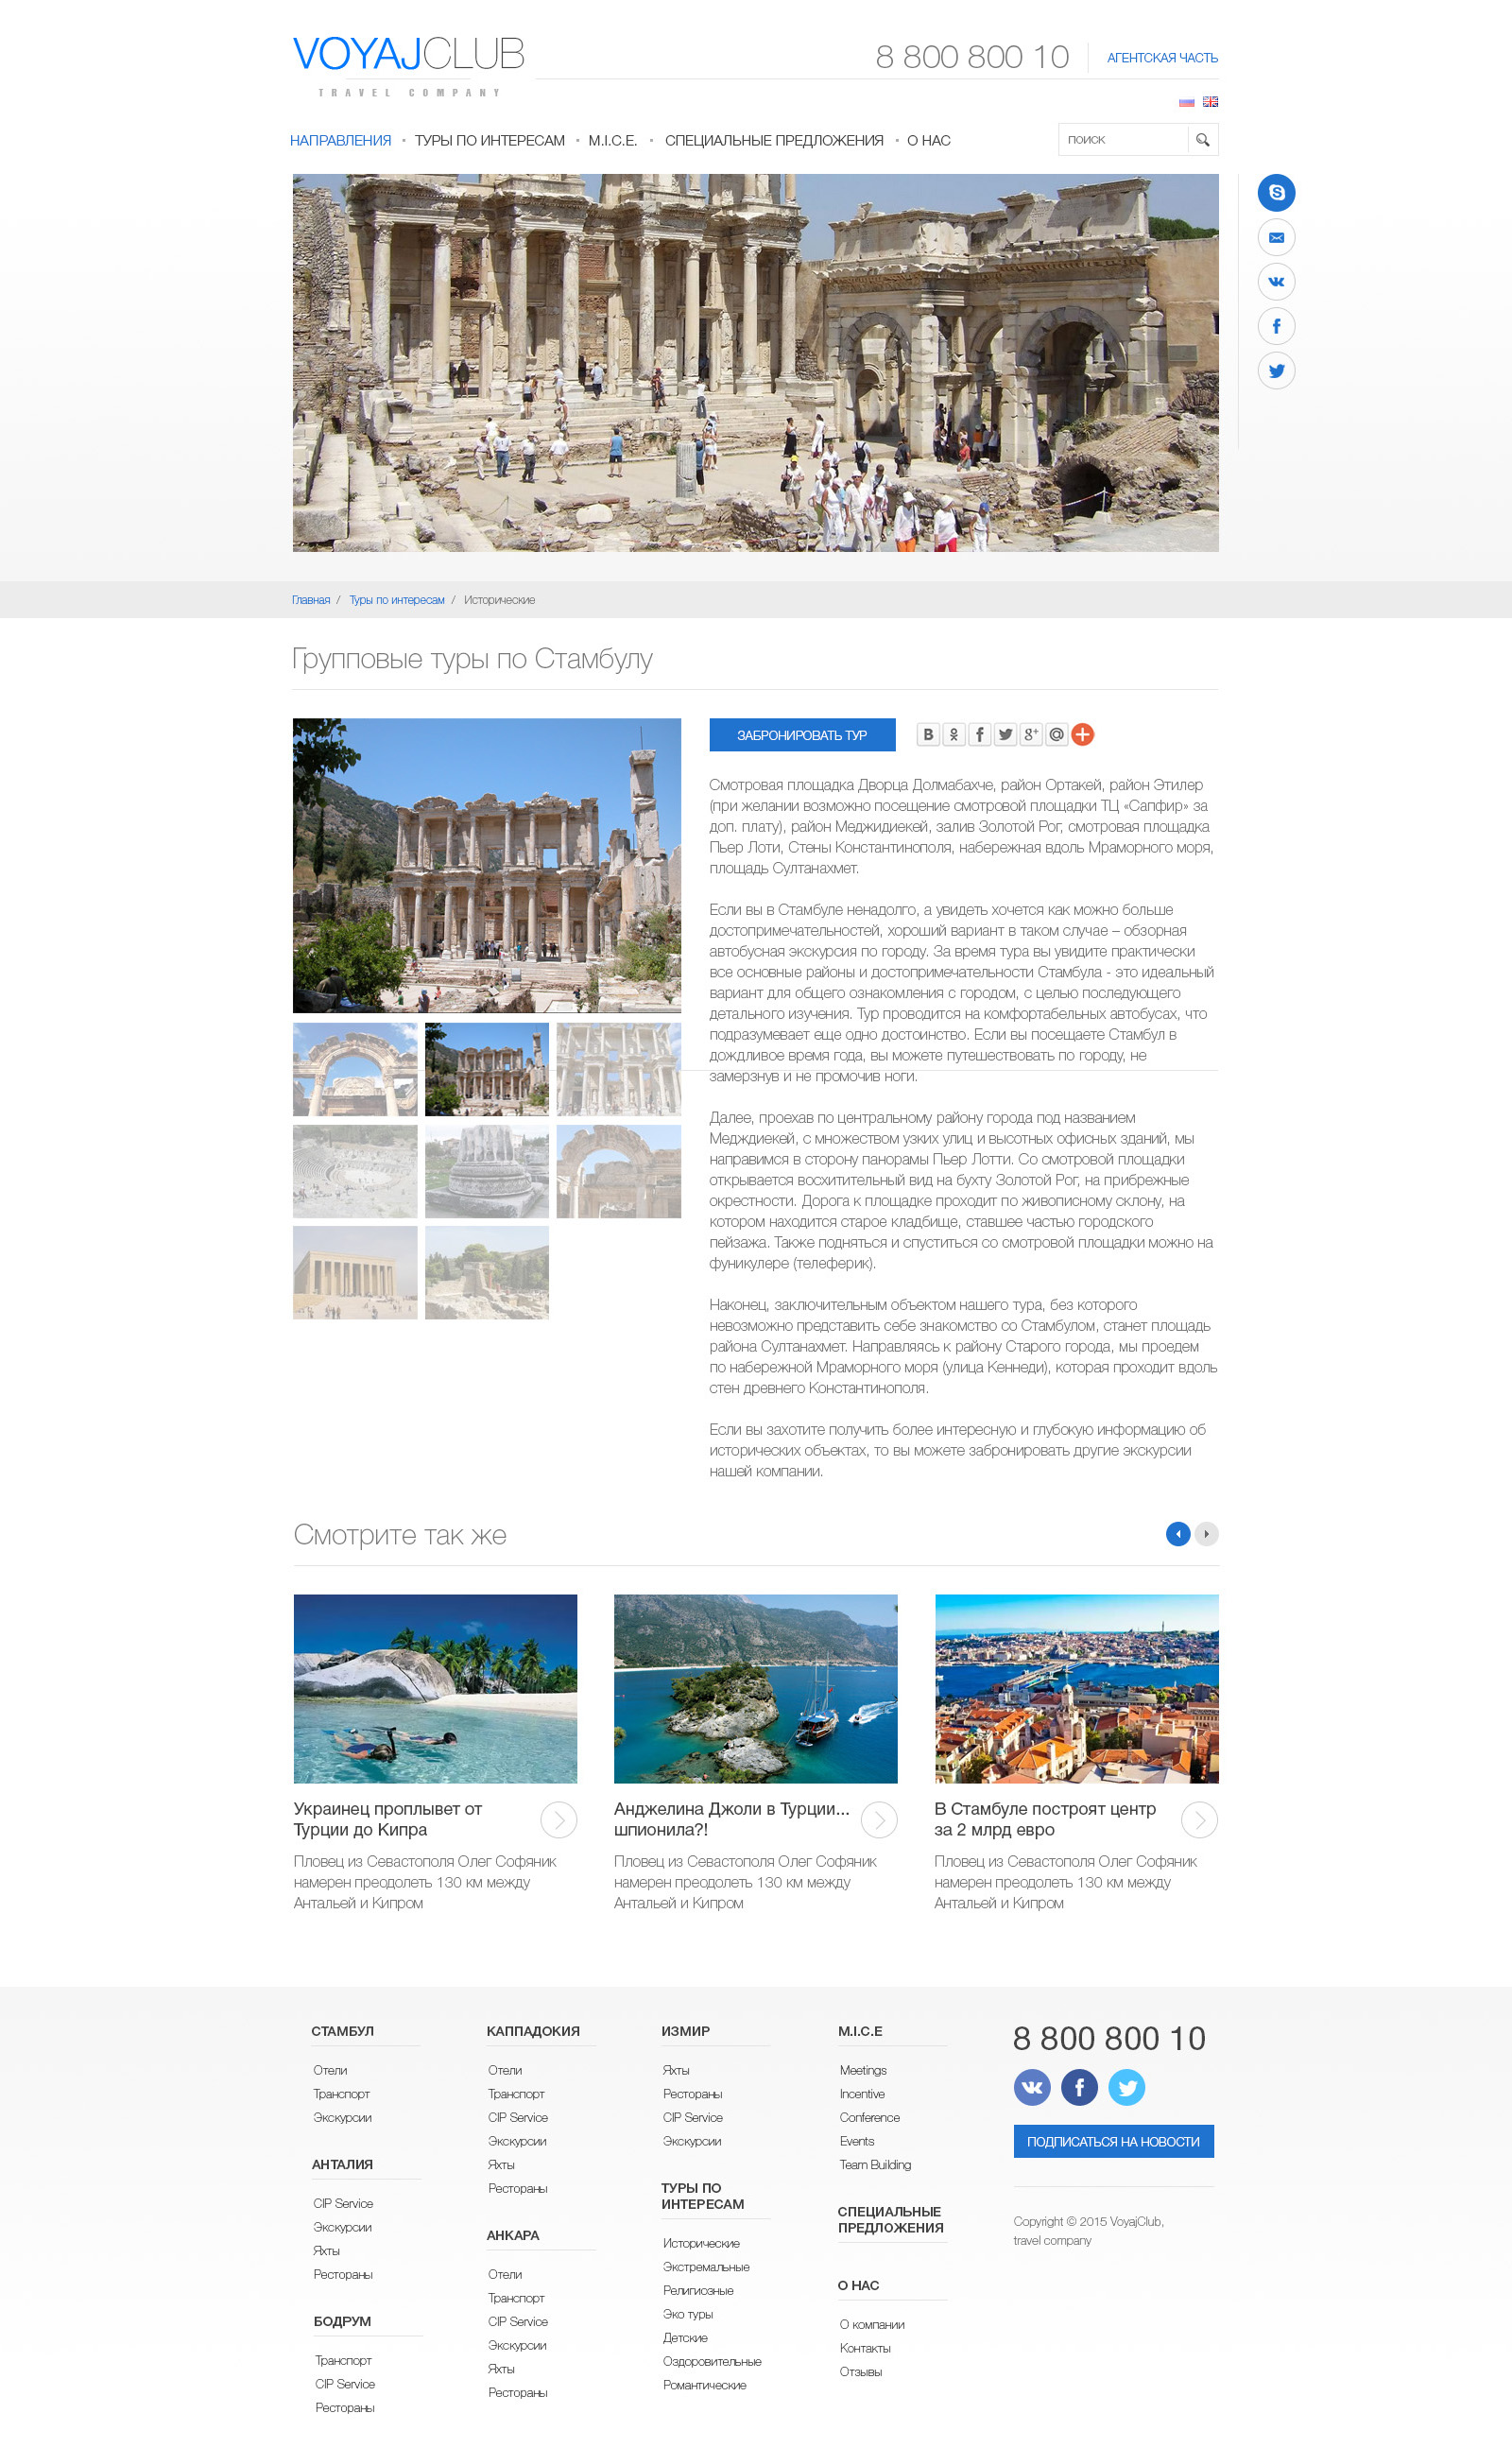 Un site informativ al unei agenții de turism specializată pe direcția Turcia